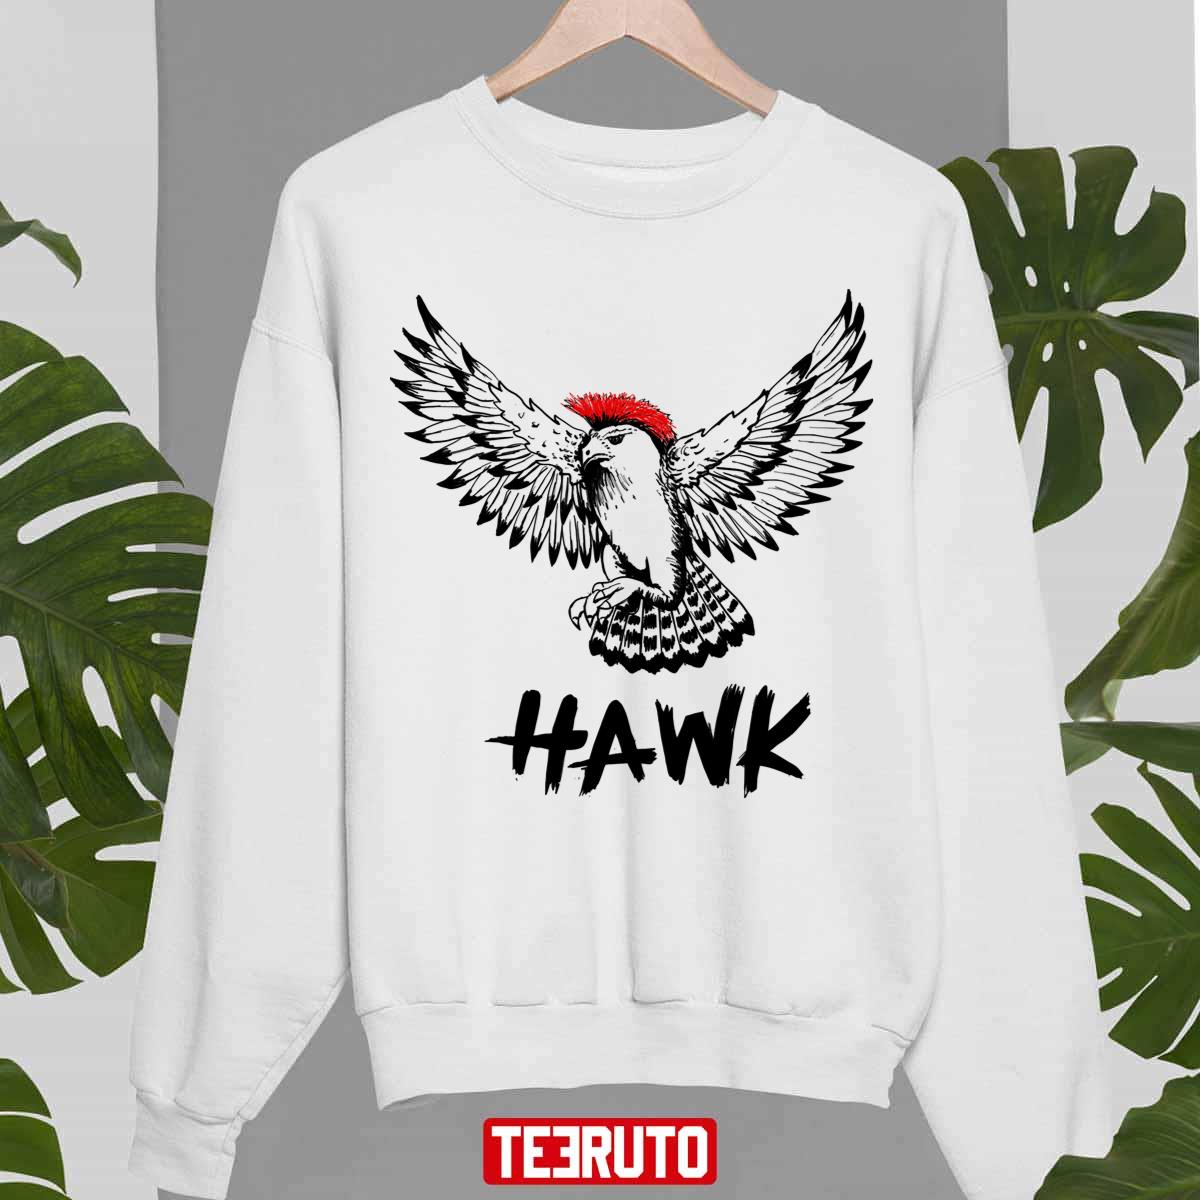 Hawk Cobra Kai shirt